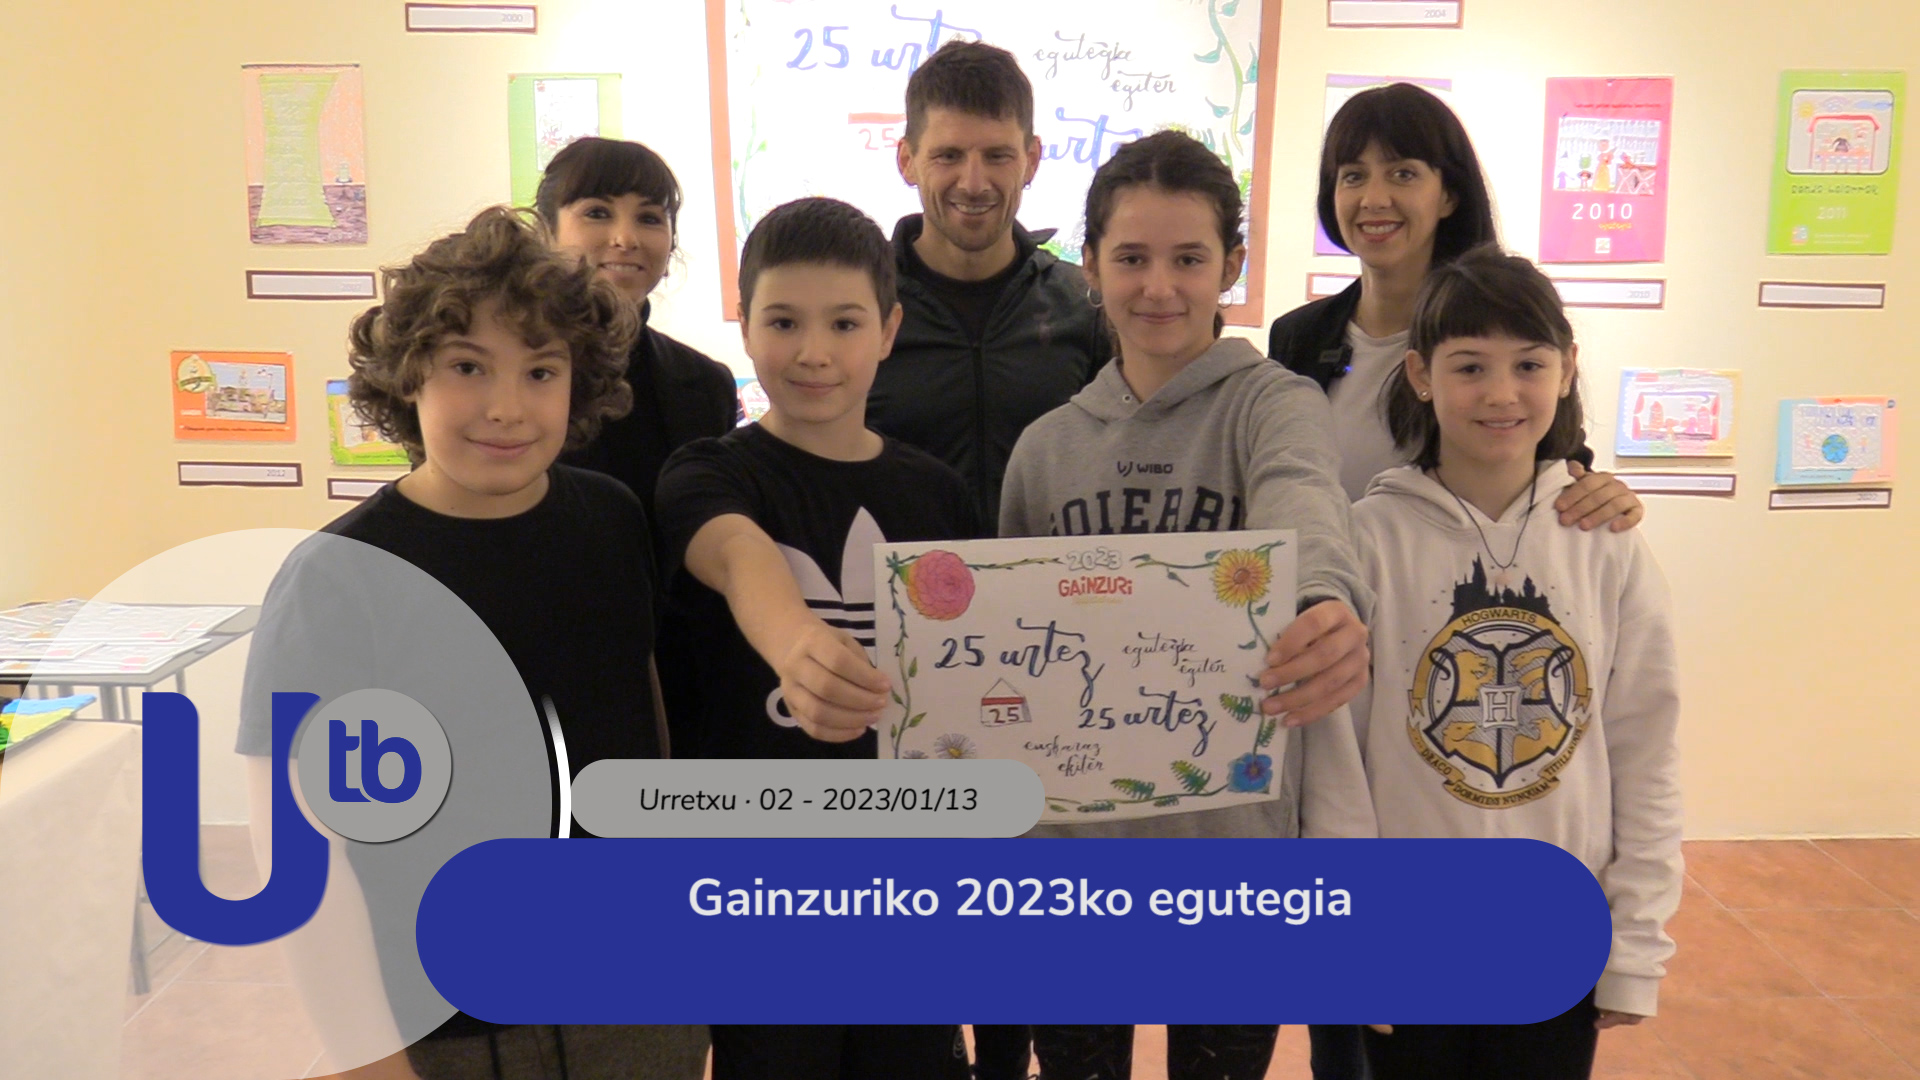 Calendario 2023 de Gainzuri / Gainzuriko 2023ko egutegia 